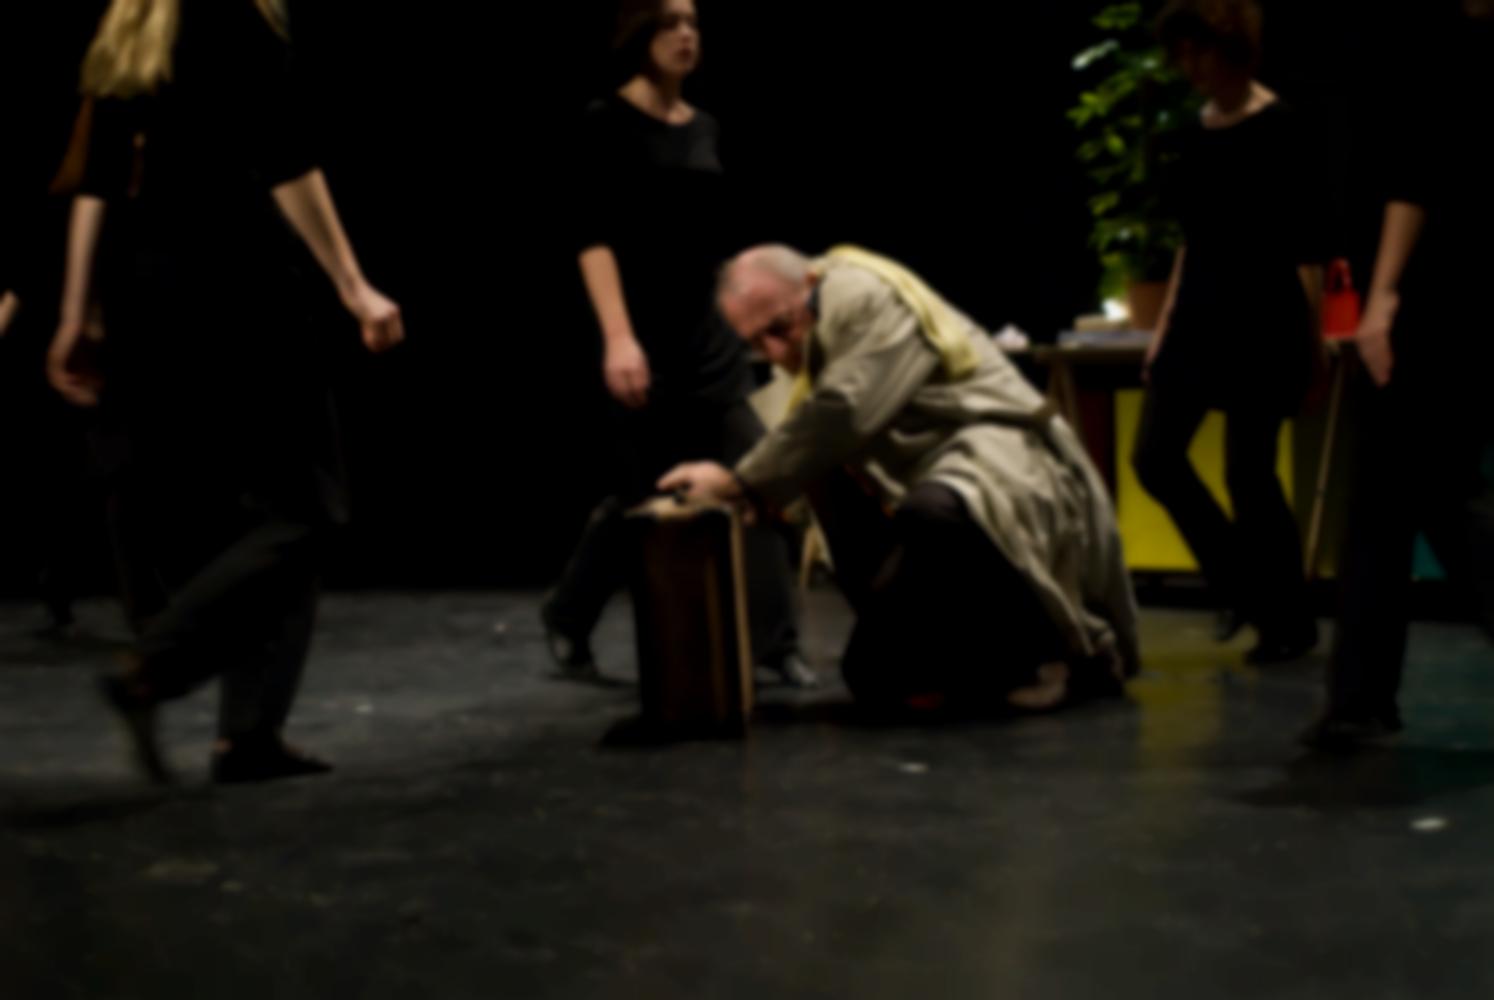 Le chœur se resserre autour du père en imperméable, accroupi près de sa valise dans une position de défense. Nanterre, octobre 2009.